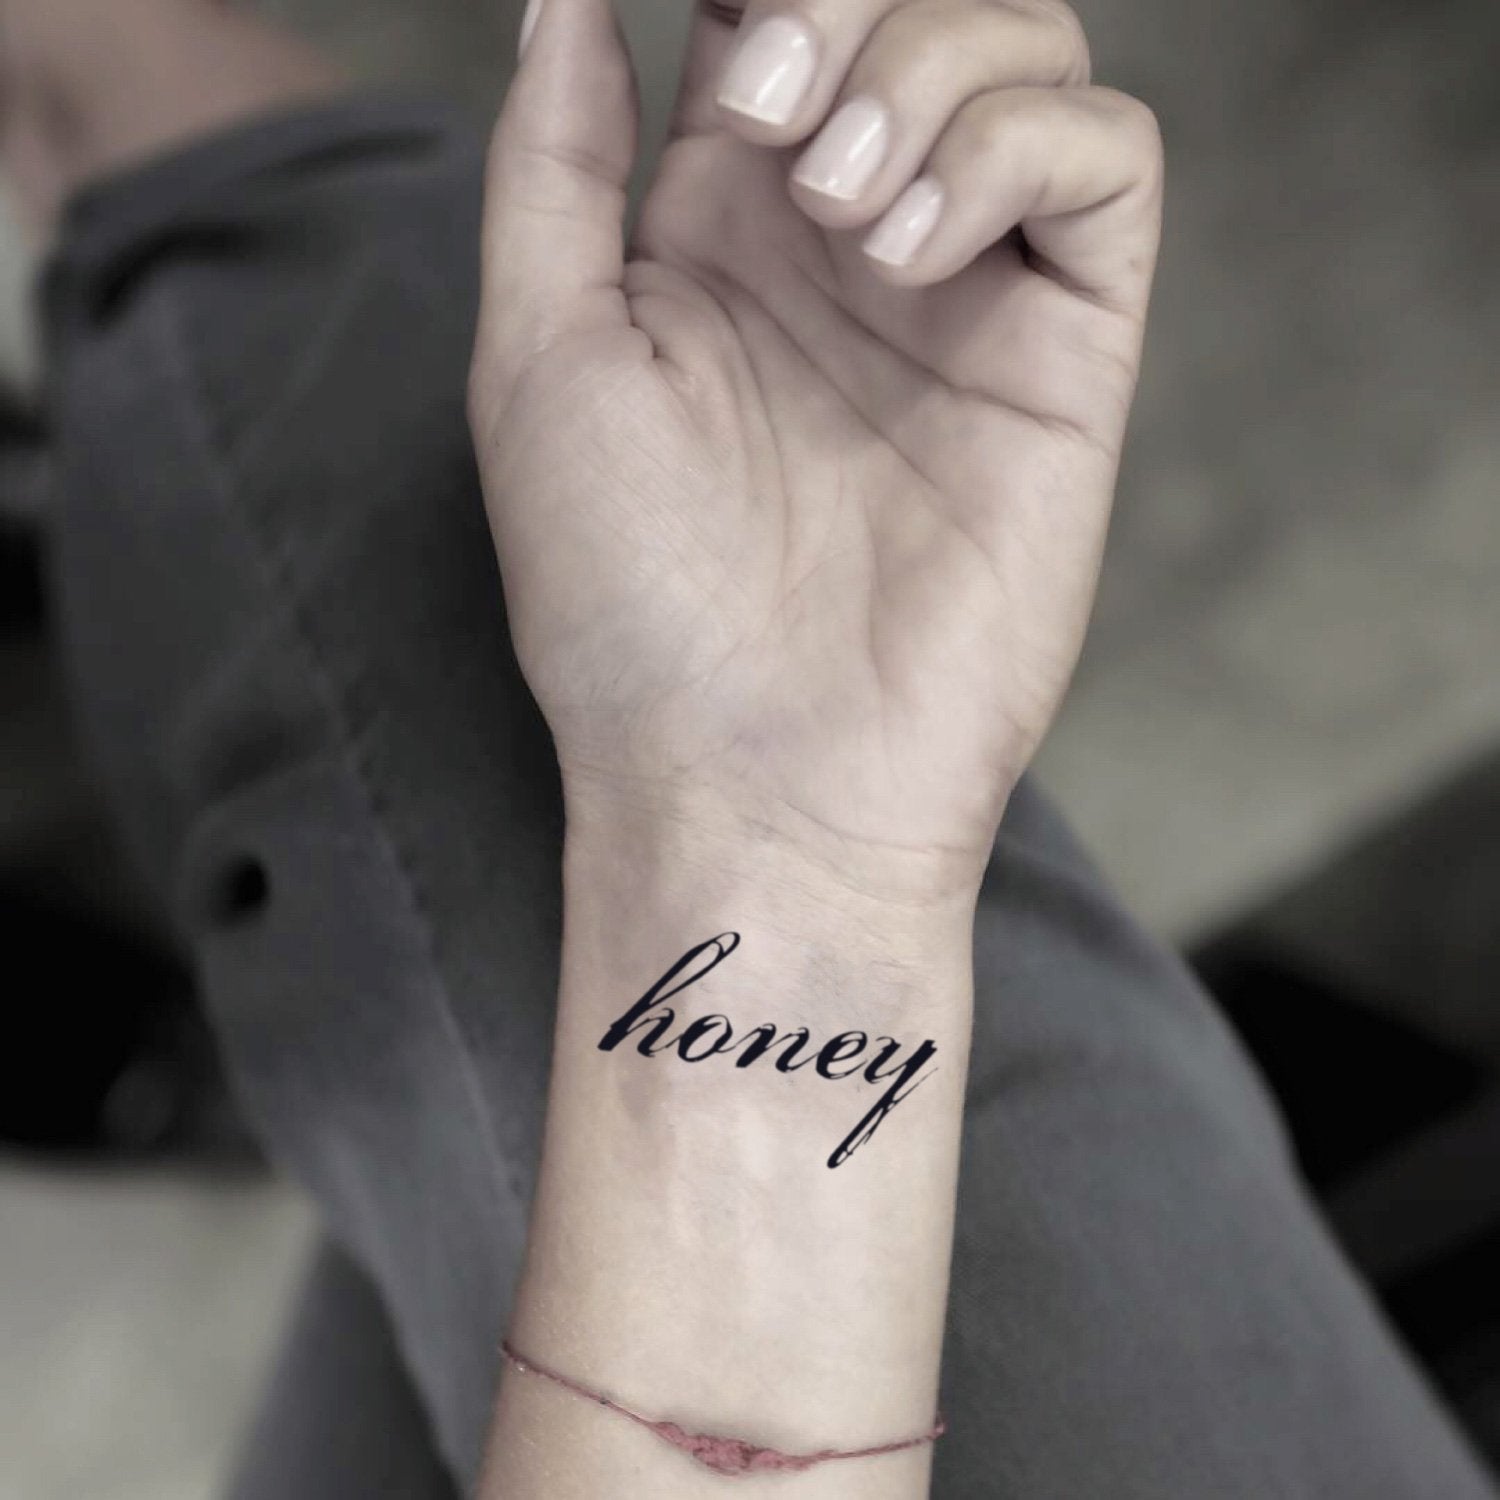 Hello Honey Script Tattoo Design | S & V Lettering Tattoo Design |  Heartbeat Tattoo Design for Girls - YouTube